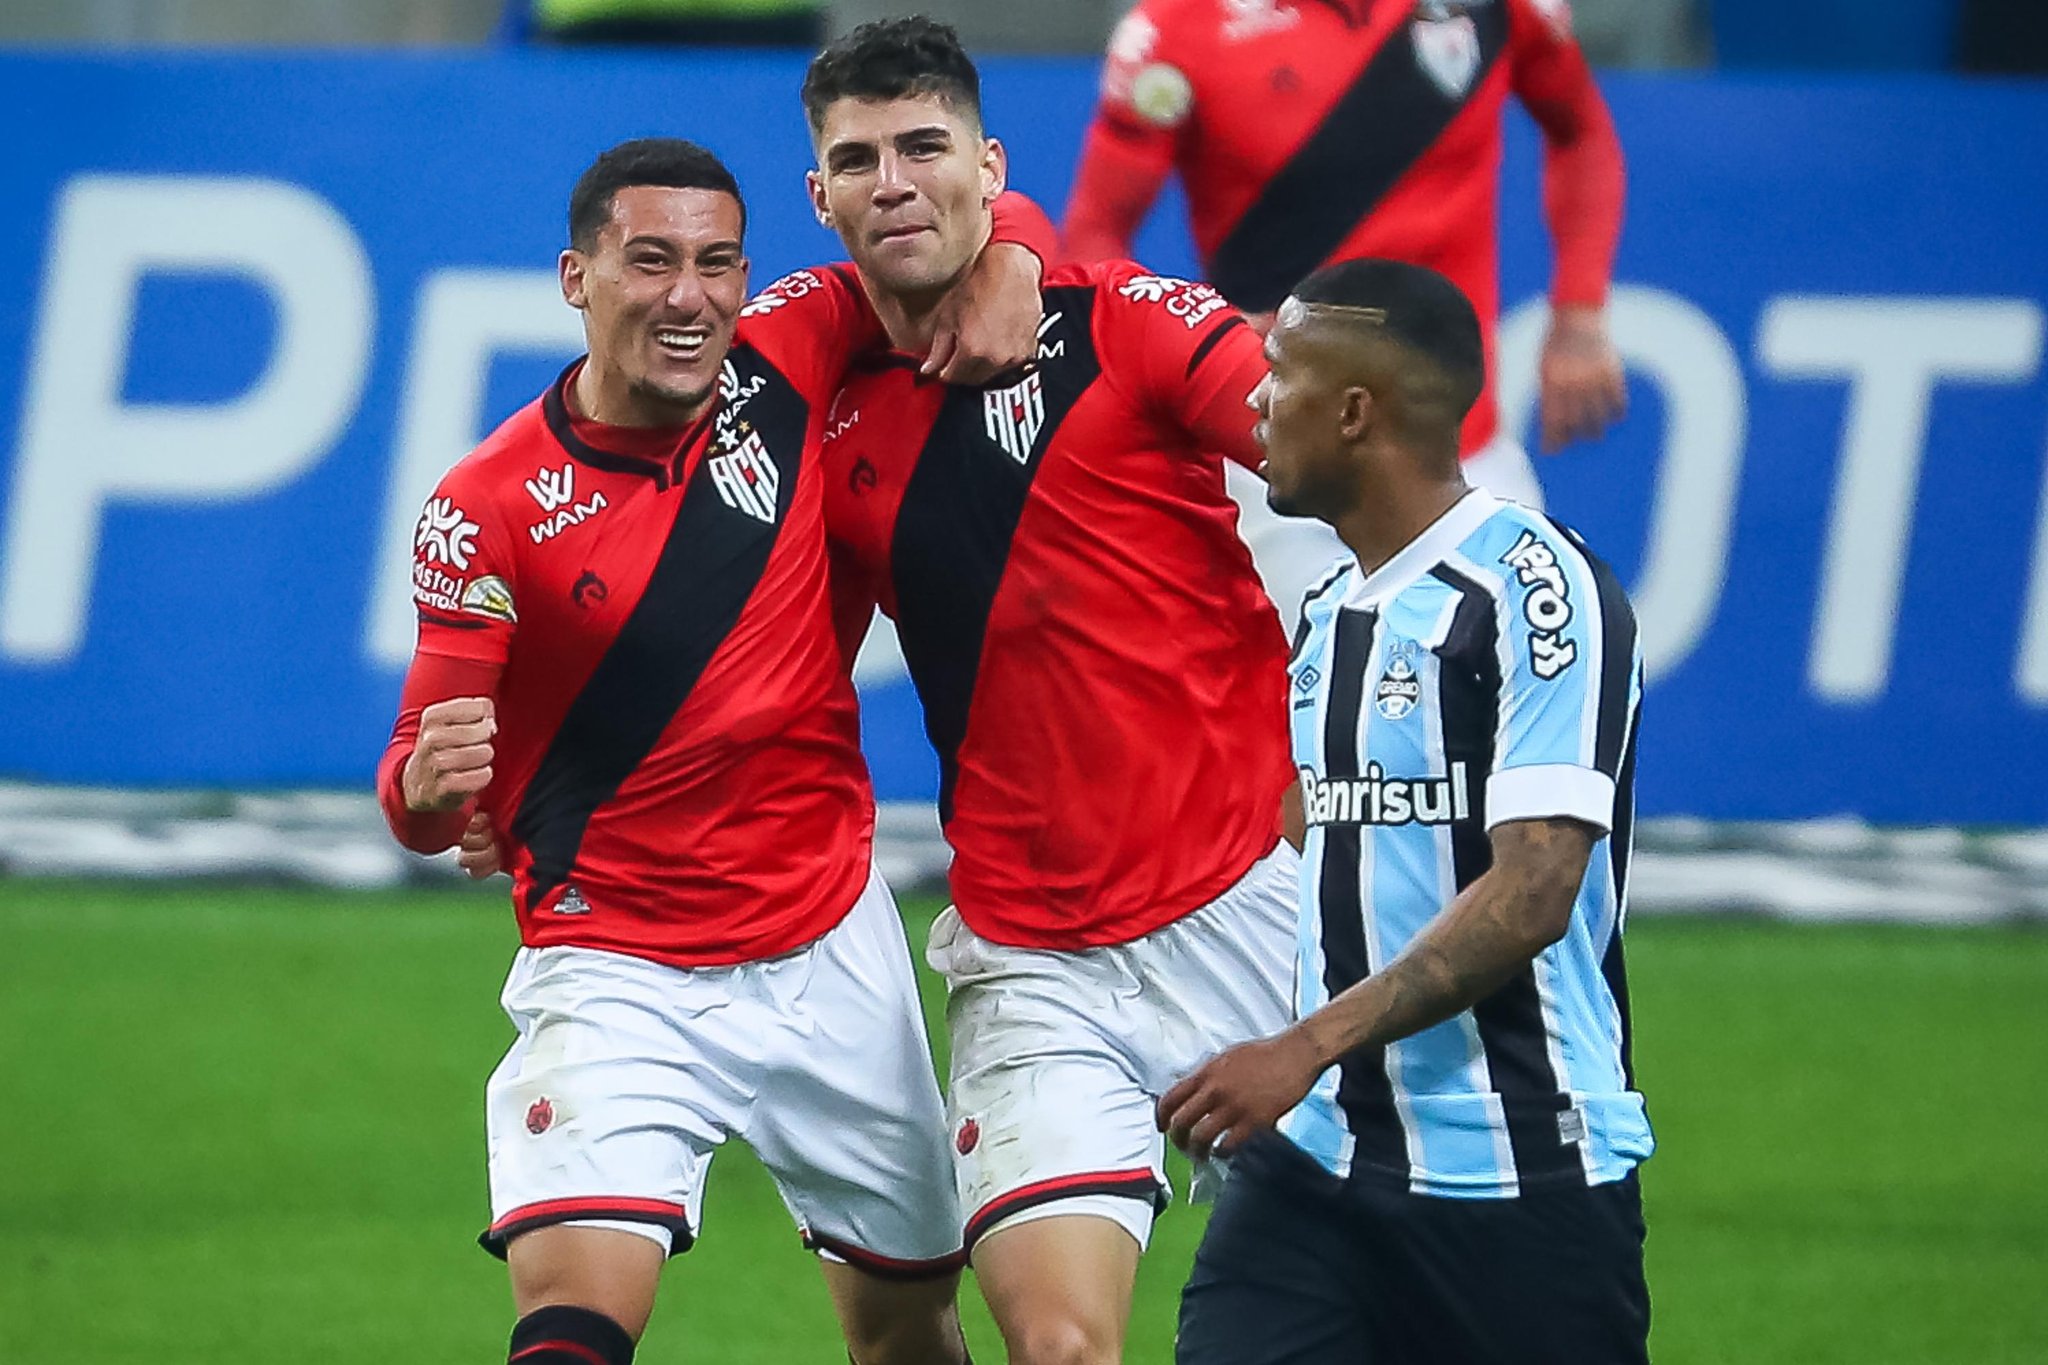 Grêmio 0 x 1 Atlético-GO – Tricolor é surpreendido e segue sem vencer no BR